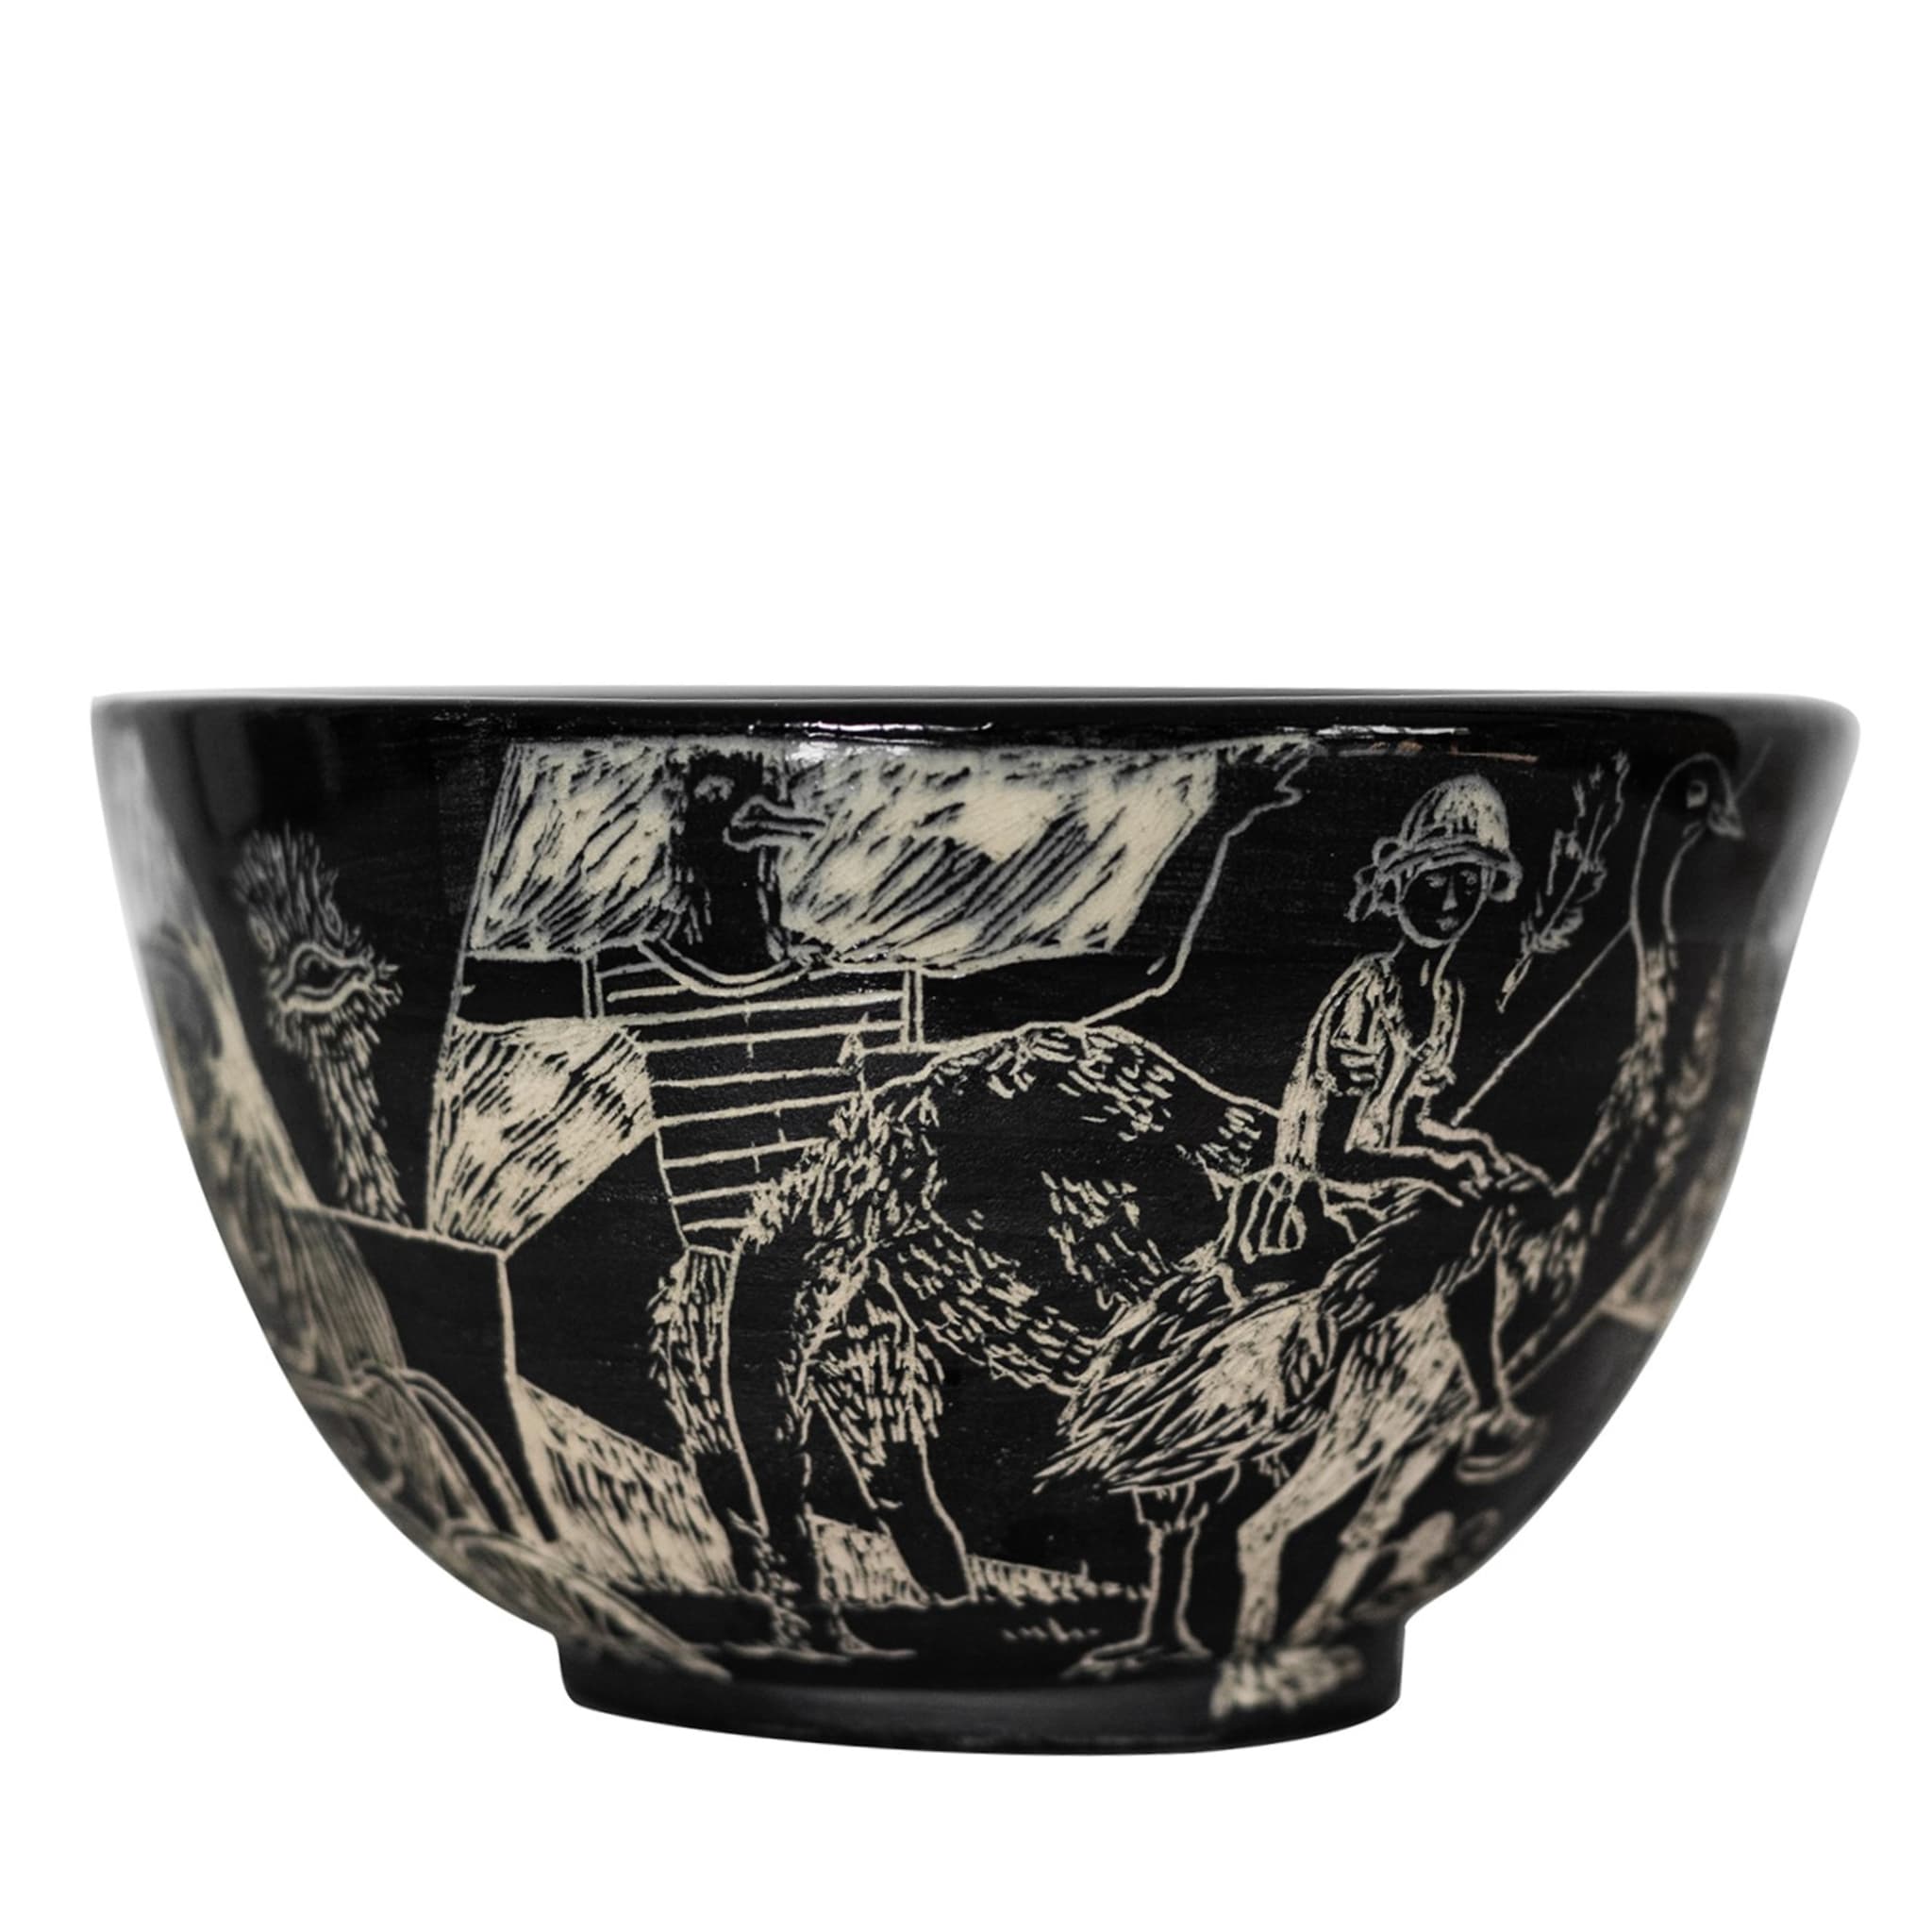 Lo Struzzo Black and Beige Grès Decorative Bowl - Main view